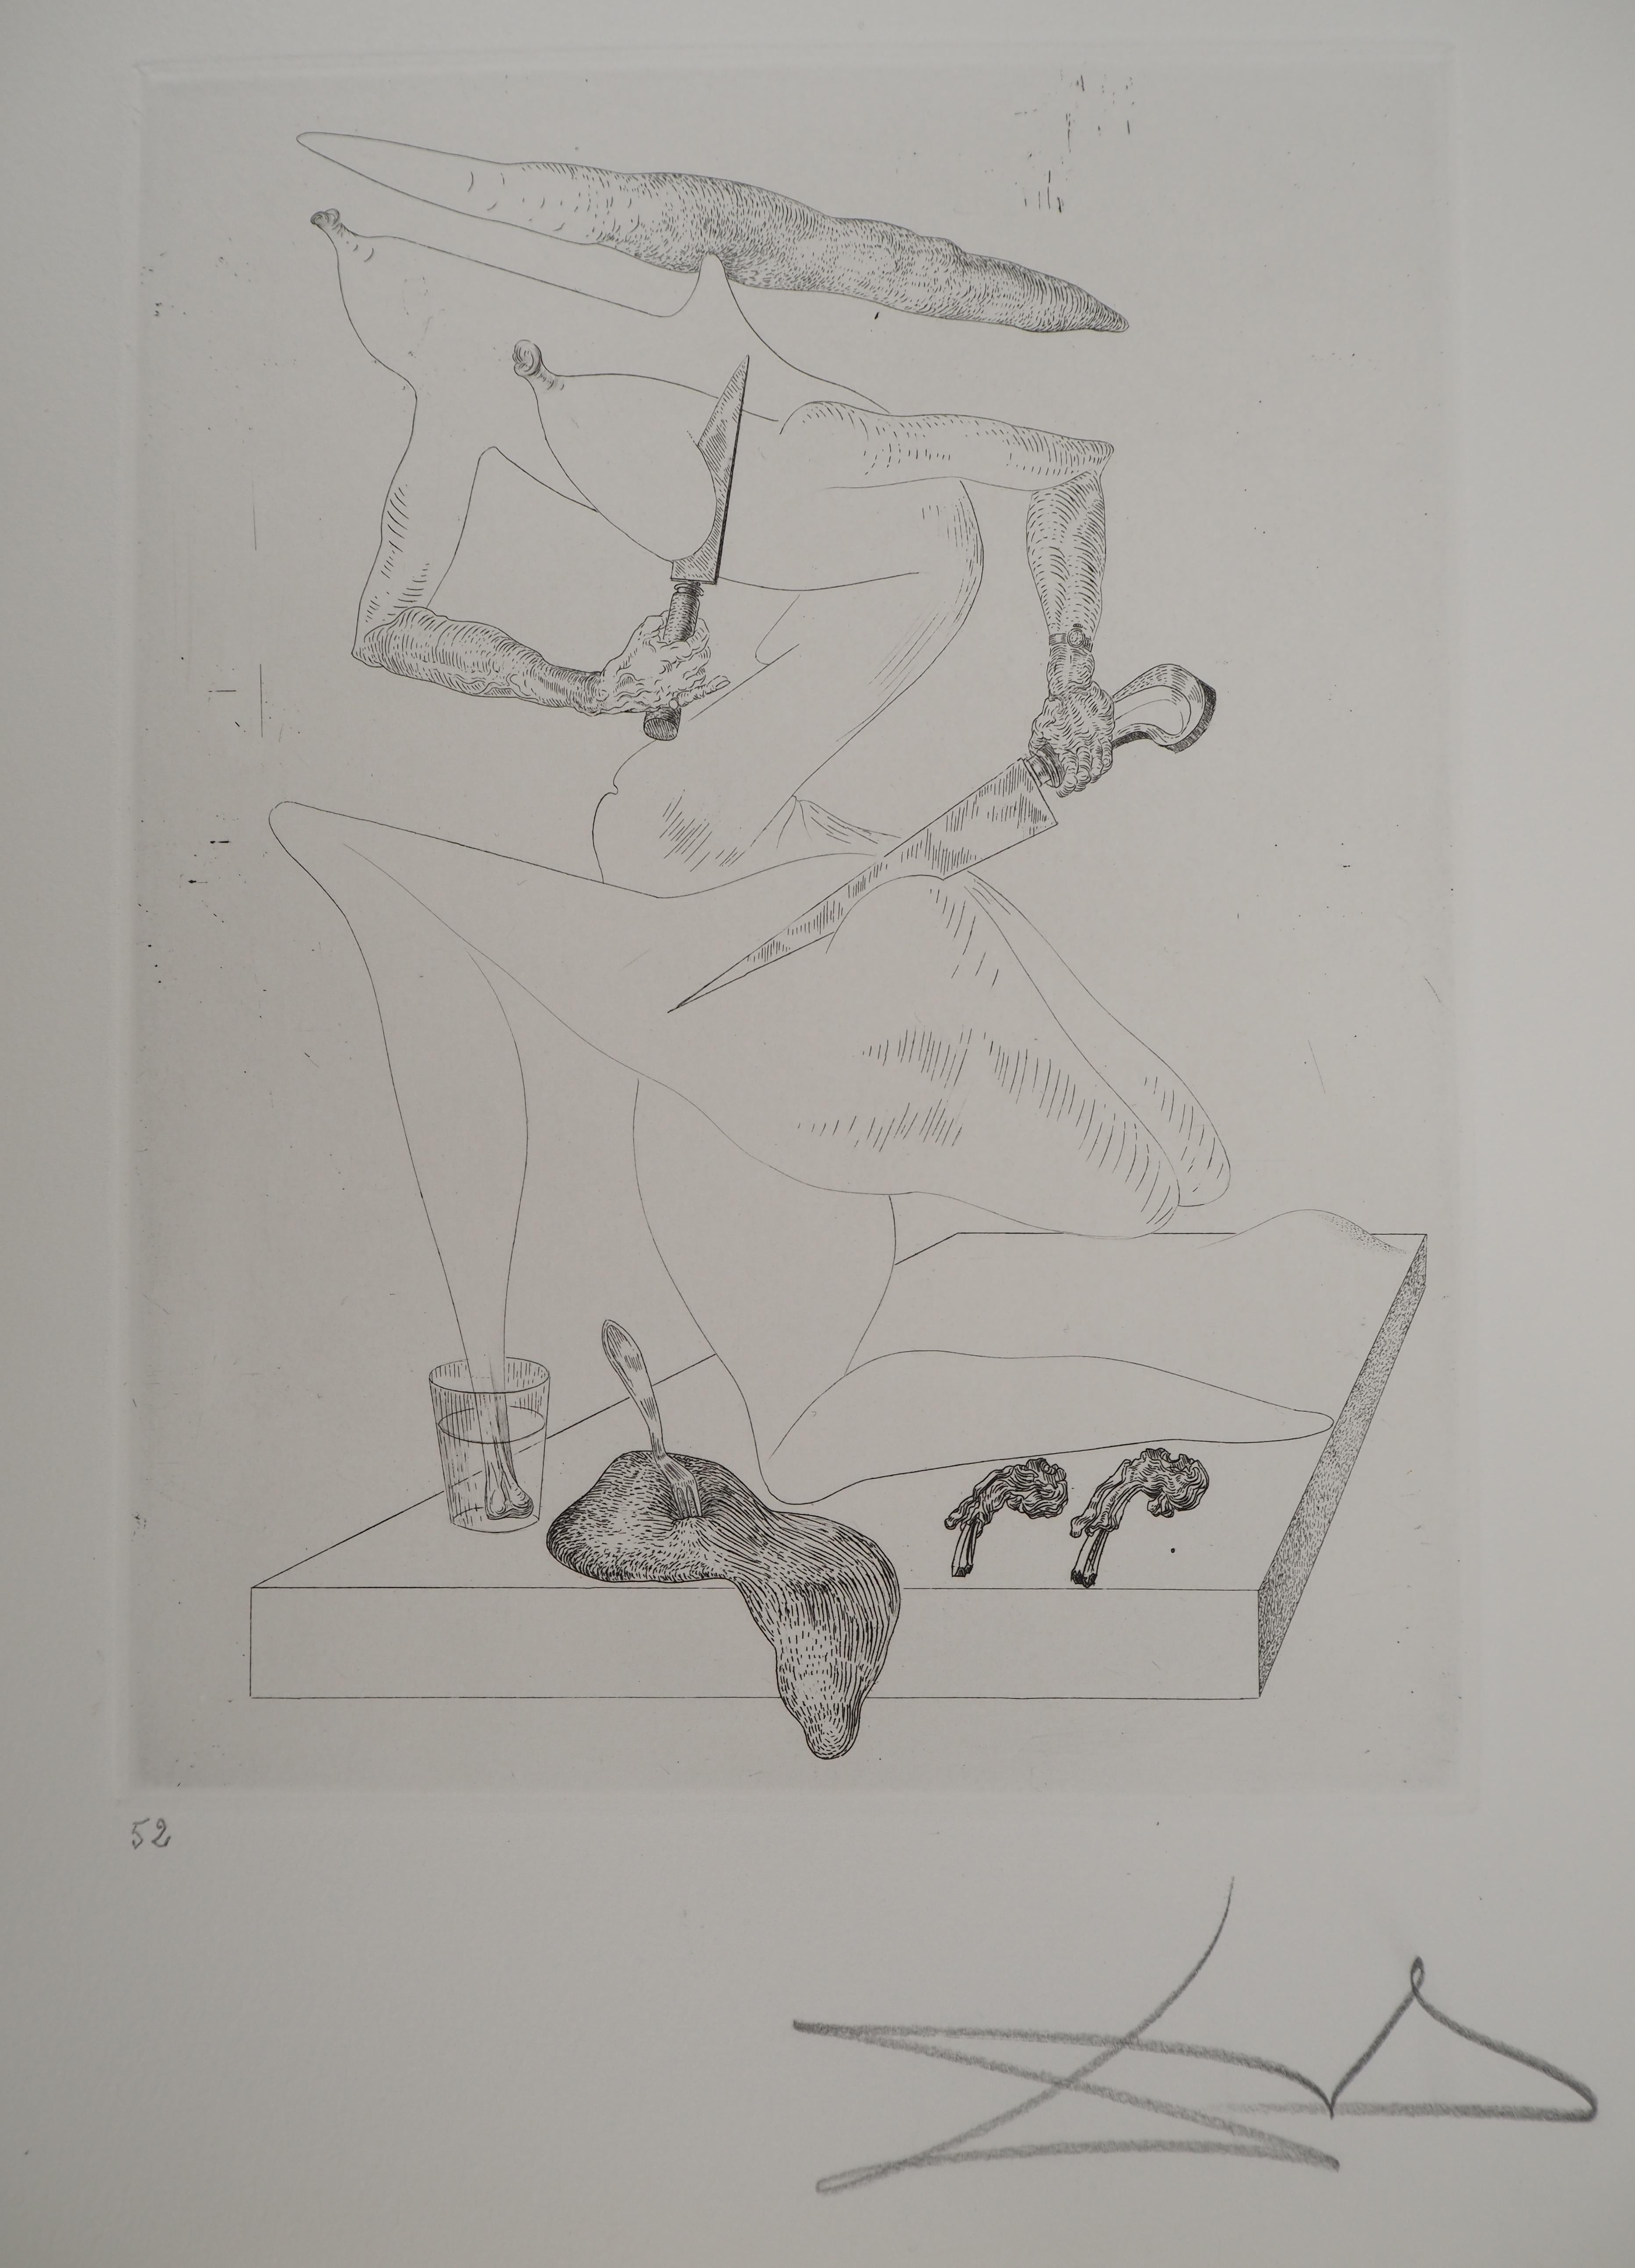 Maldoror : Making dinner - Original etching, HANDSIGNED, 1975 - Print by Salvador Dalí